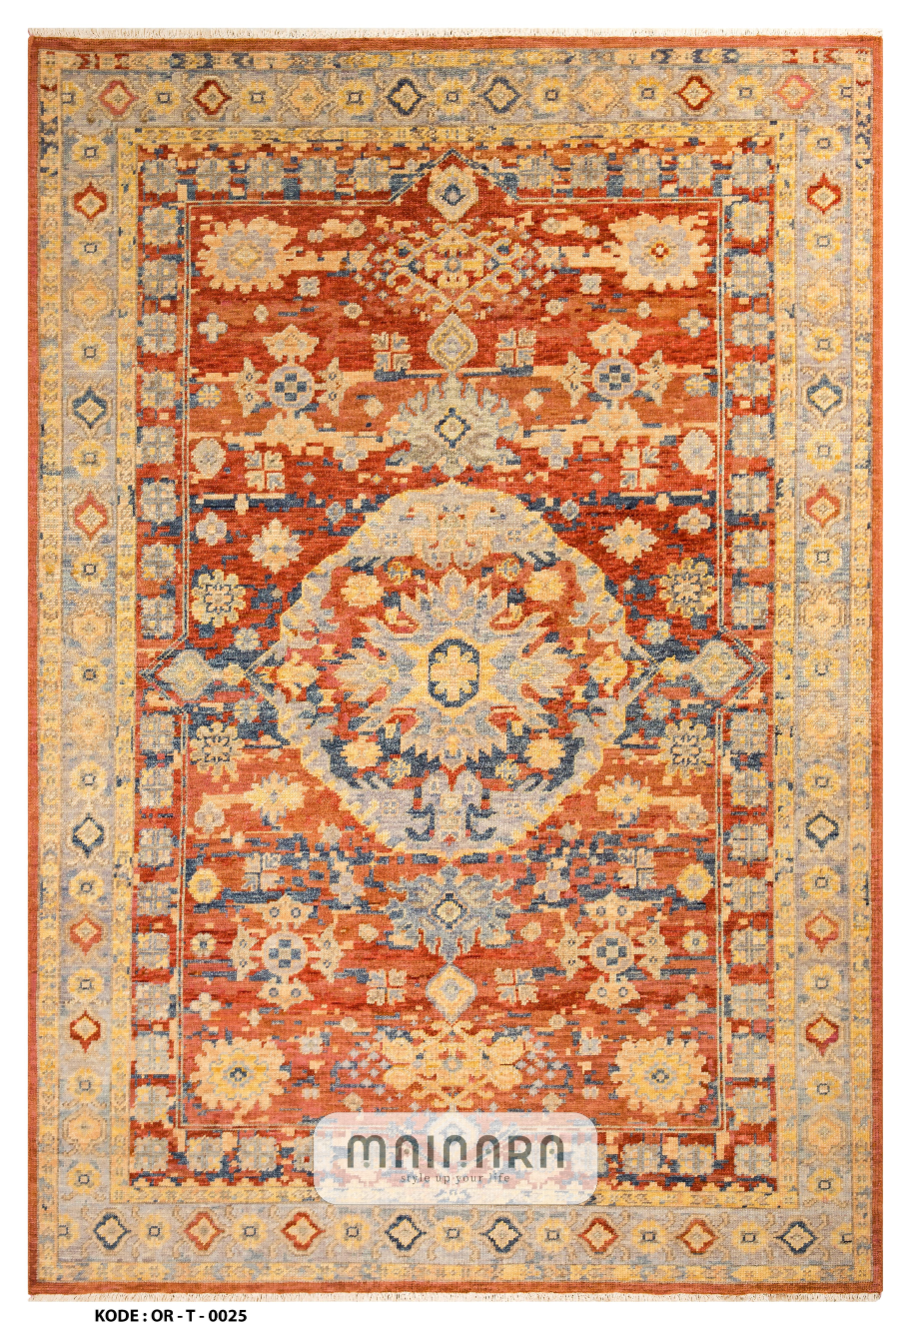 Karpet Tradisional (OR-T-0025) - Orange,Yellow,Gold